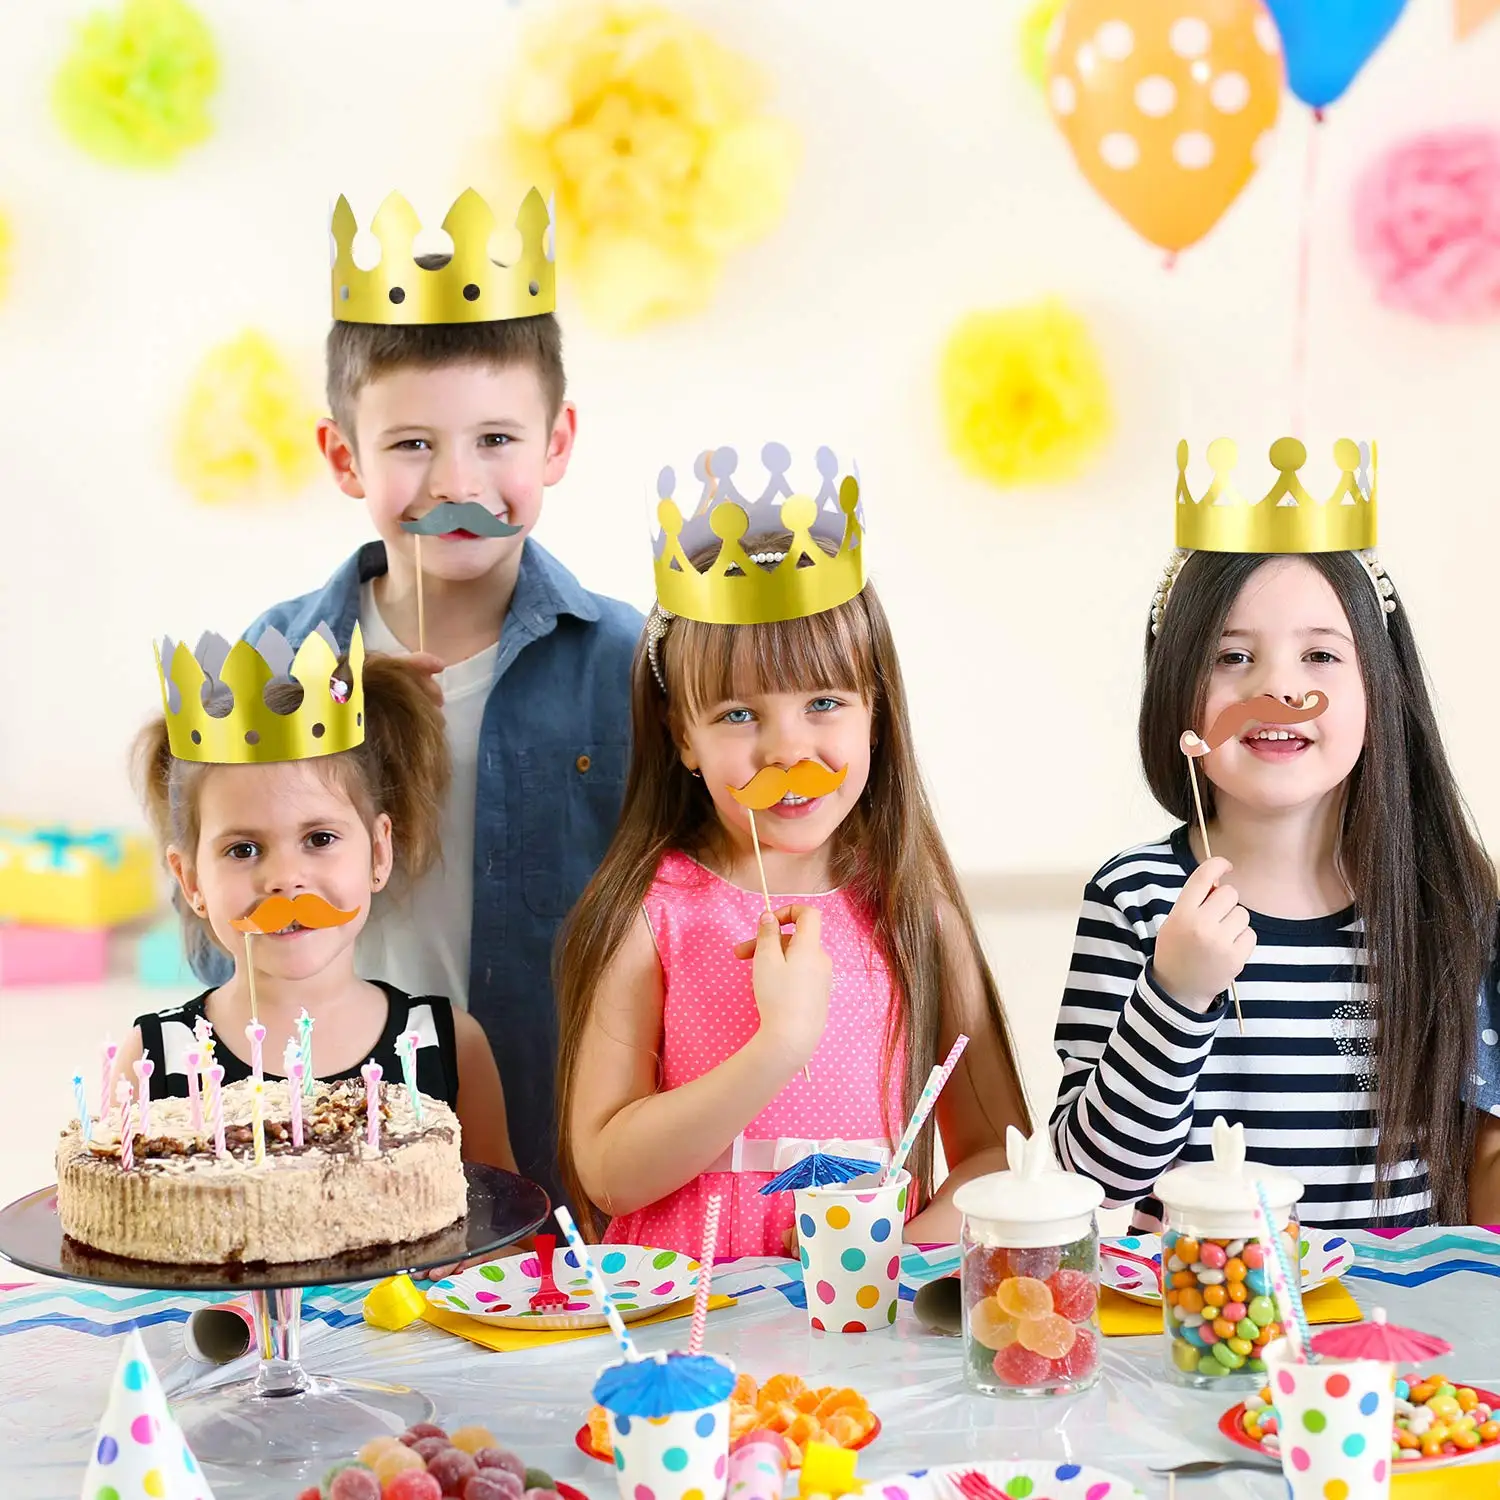 JINGYOU Coronas de Papel Dorado,Corona de Fiesta Sombreros de Papel,Rey de La Fiesta Corona,Corona de Papel de Fiesta,Sombreros Cumpleaños Fiesta,Fun Birthday Party Sombreros para Niños Y Adultos 